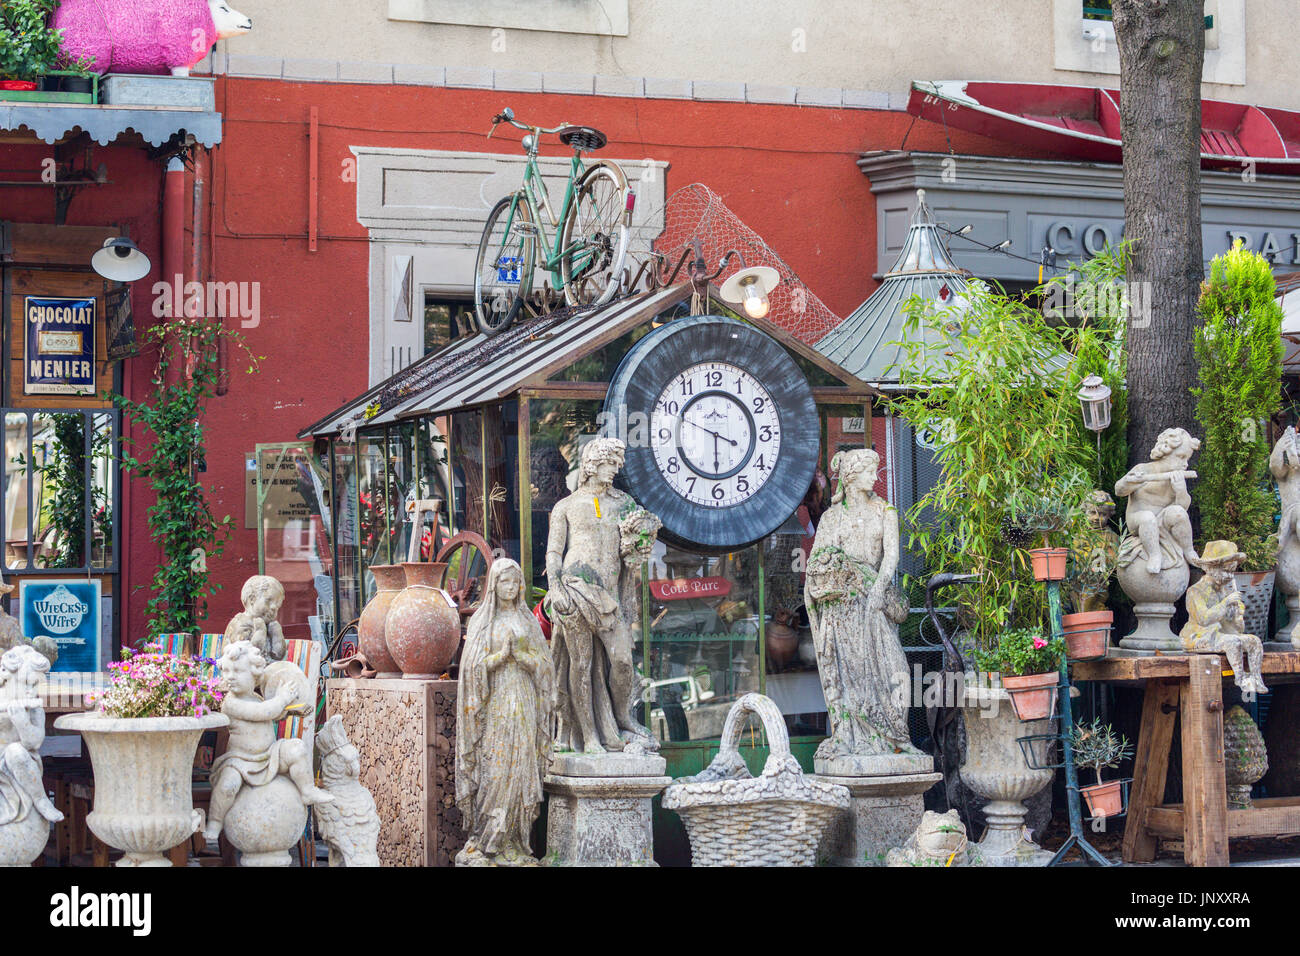 Isle-sur-la-Sorgue, en Provence, France - le 9 octobre 2015 : l'extérieur du magasin d'antiquités à l'Isle-sur-la-Sorgue, en Provence France. Isle-sur-la-Sorgue est célèbre pour ses boutiques d'antiquités et brocante. Banque D'Images